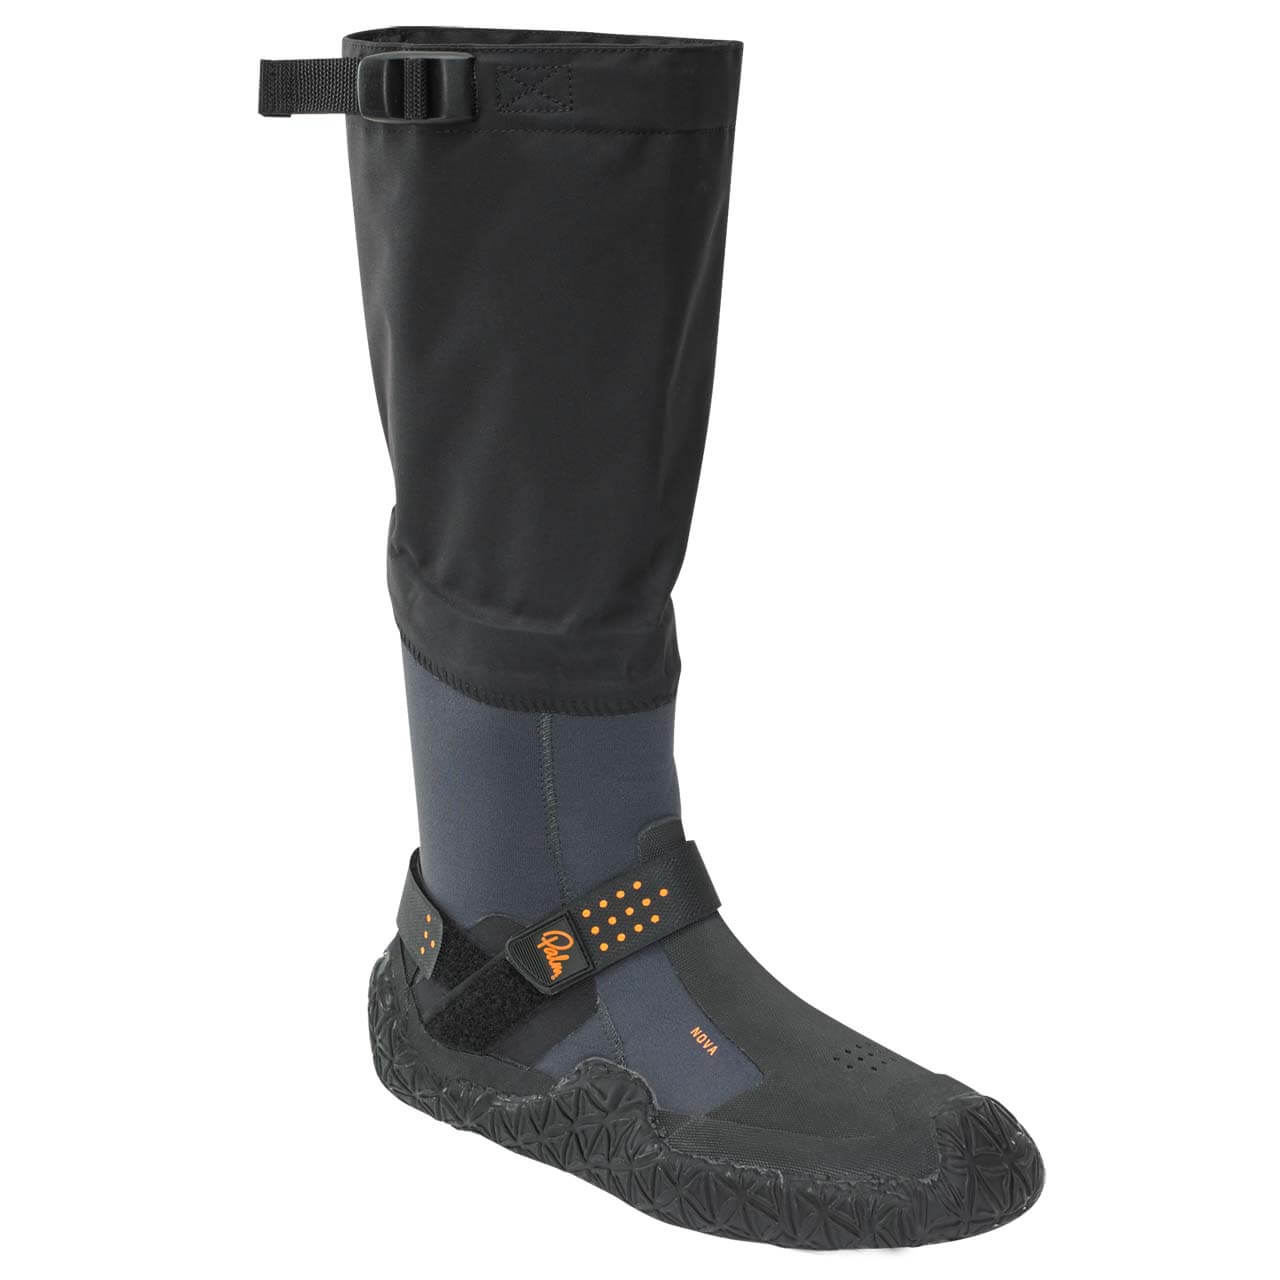 Palm Nova Boots - Jet Grey, UK 6